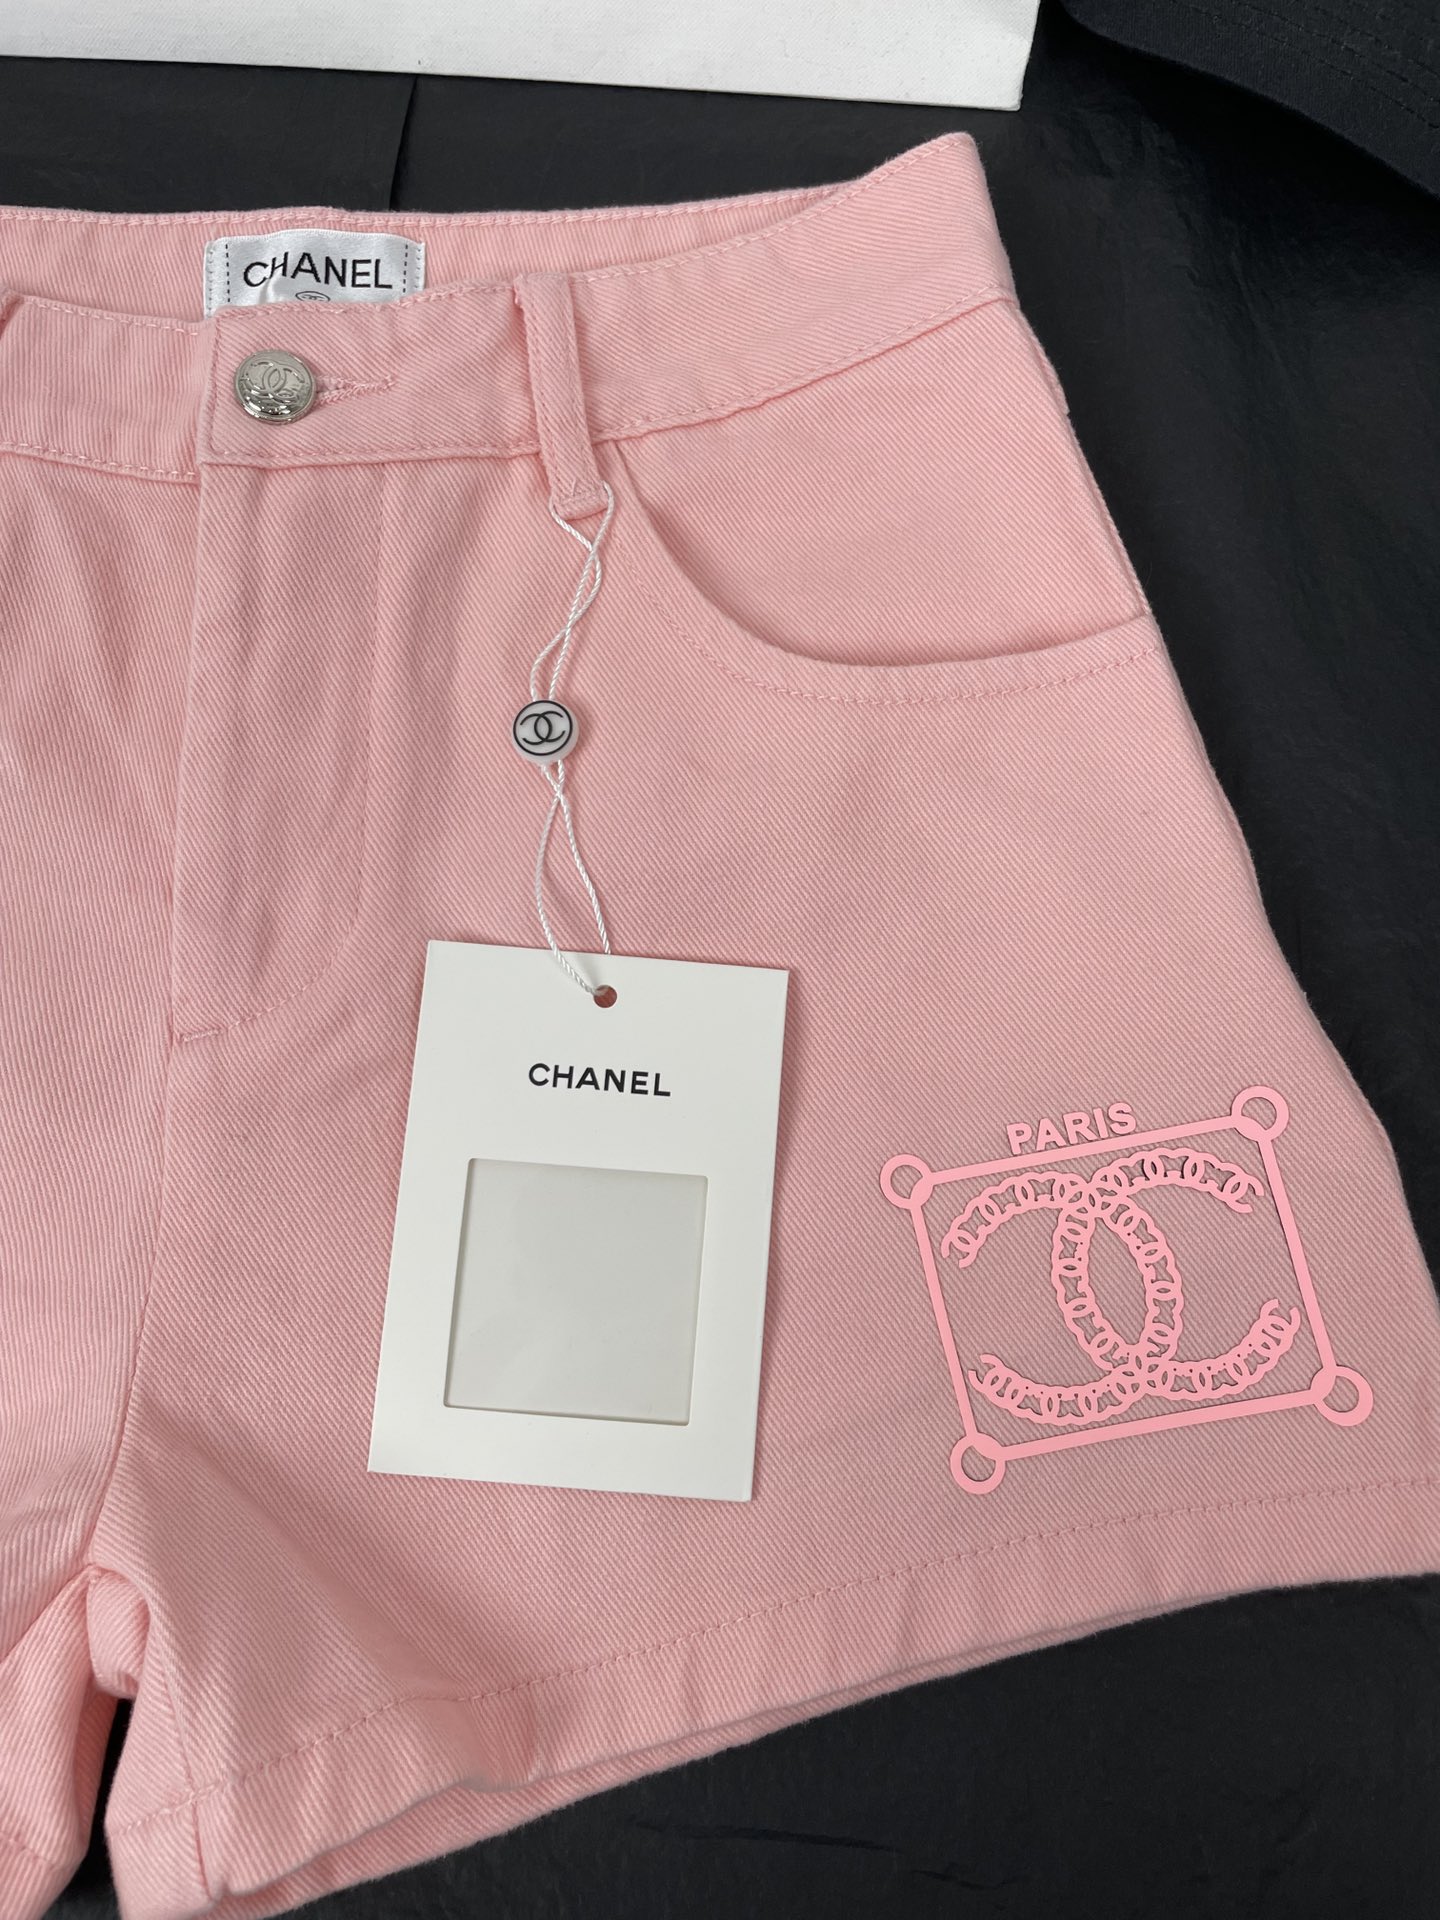 シャネルズボンコピー ショートパンツ 夏服 美しい ファッション 柔らかい 三つ色 ピンク_6